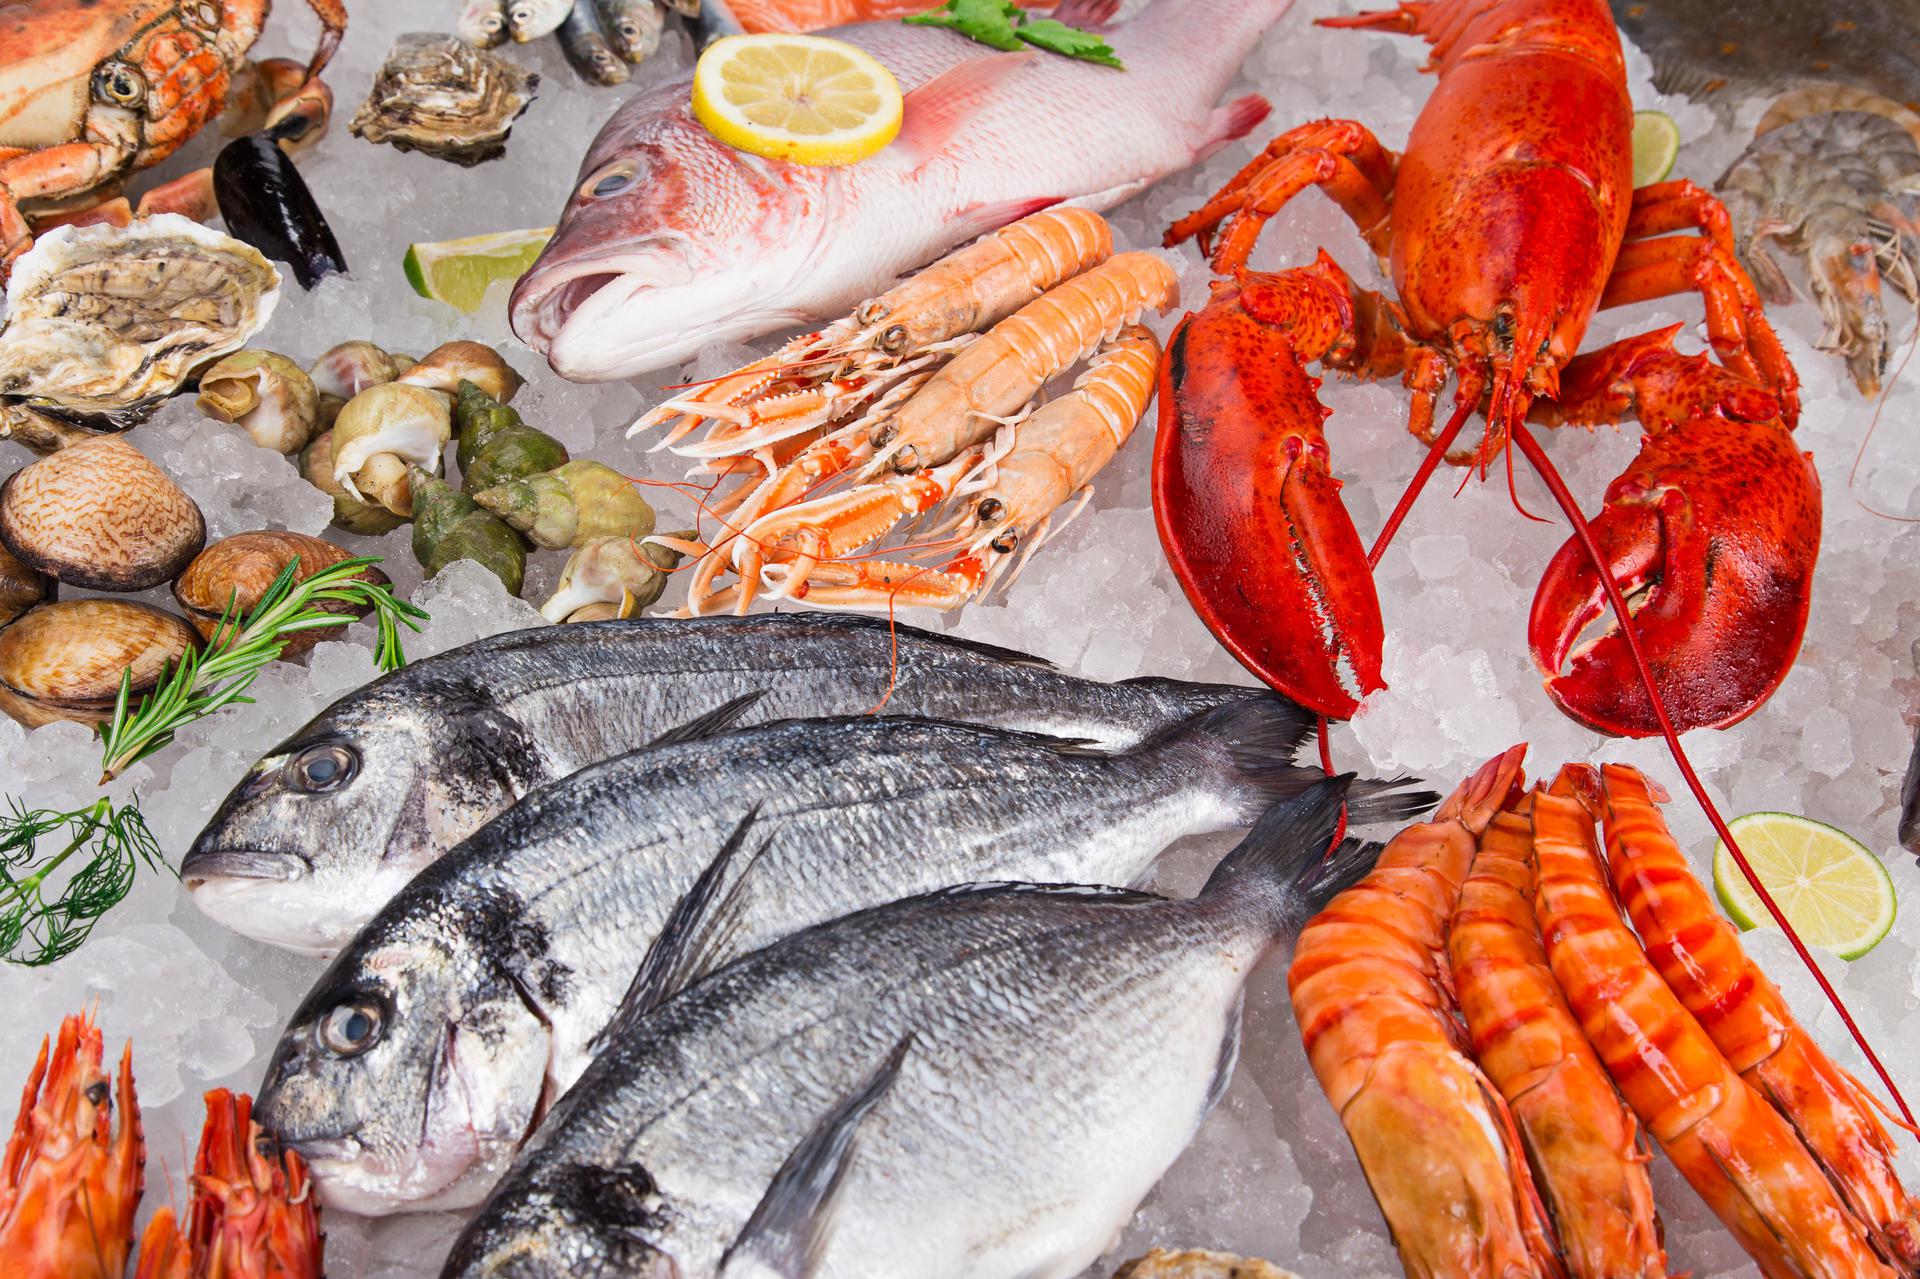  تناول المأكولات البحرية بانتظام تقي من “الشيخوخة السيئة” DqwLY0TW4AExXKJ